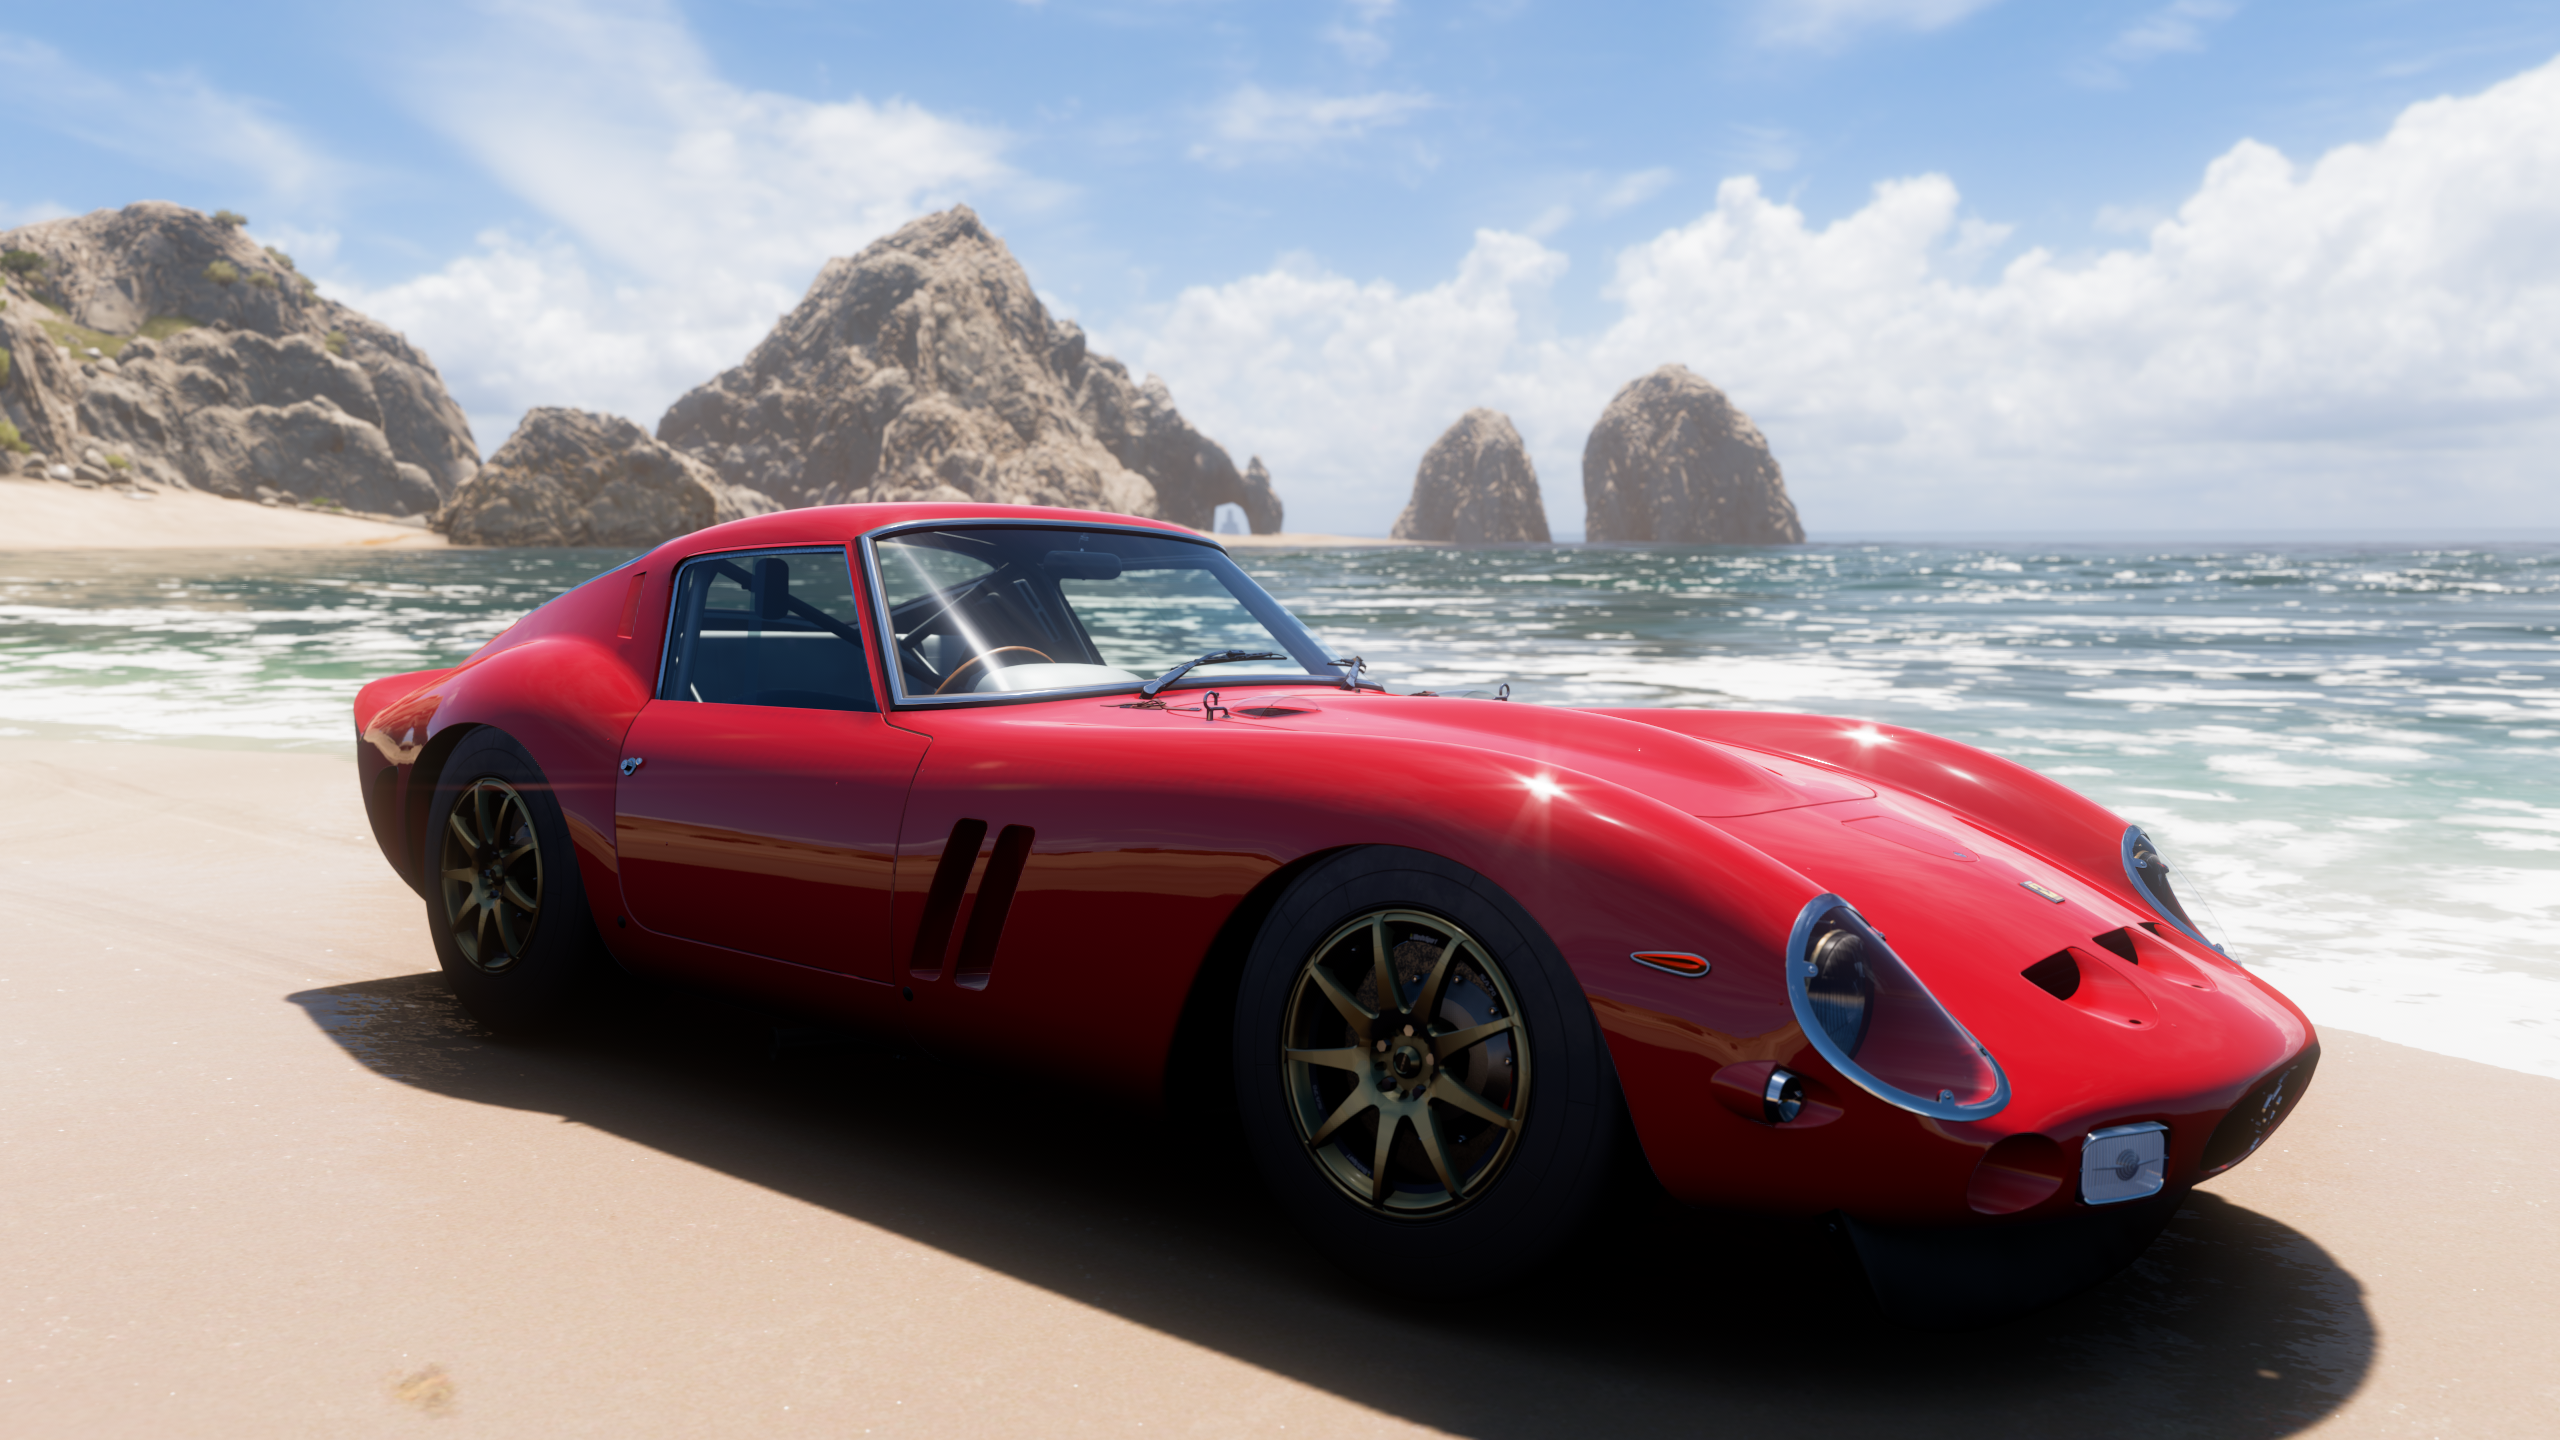 General 2560x1440 Forza Horizon 5 screen shot Ferrari 250 GTO beach car video games Ferrari